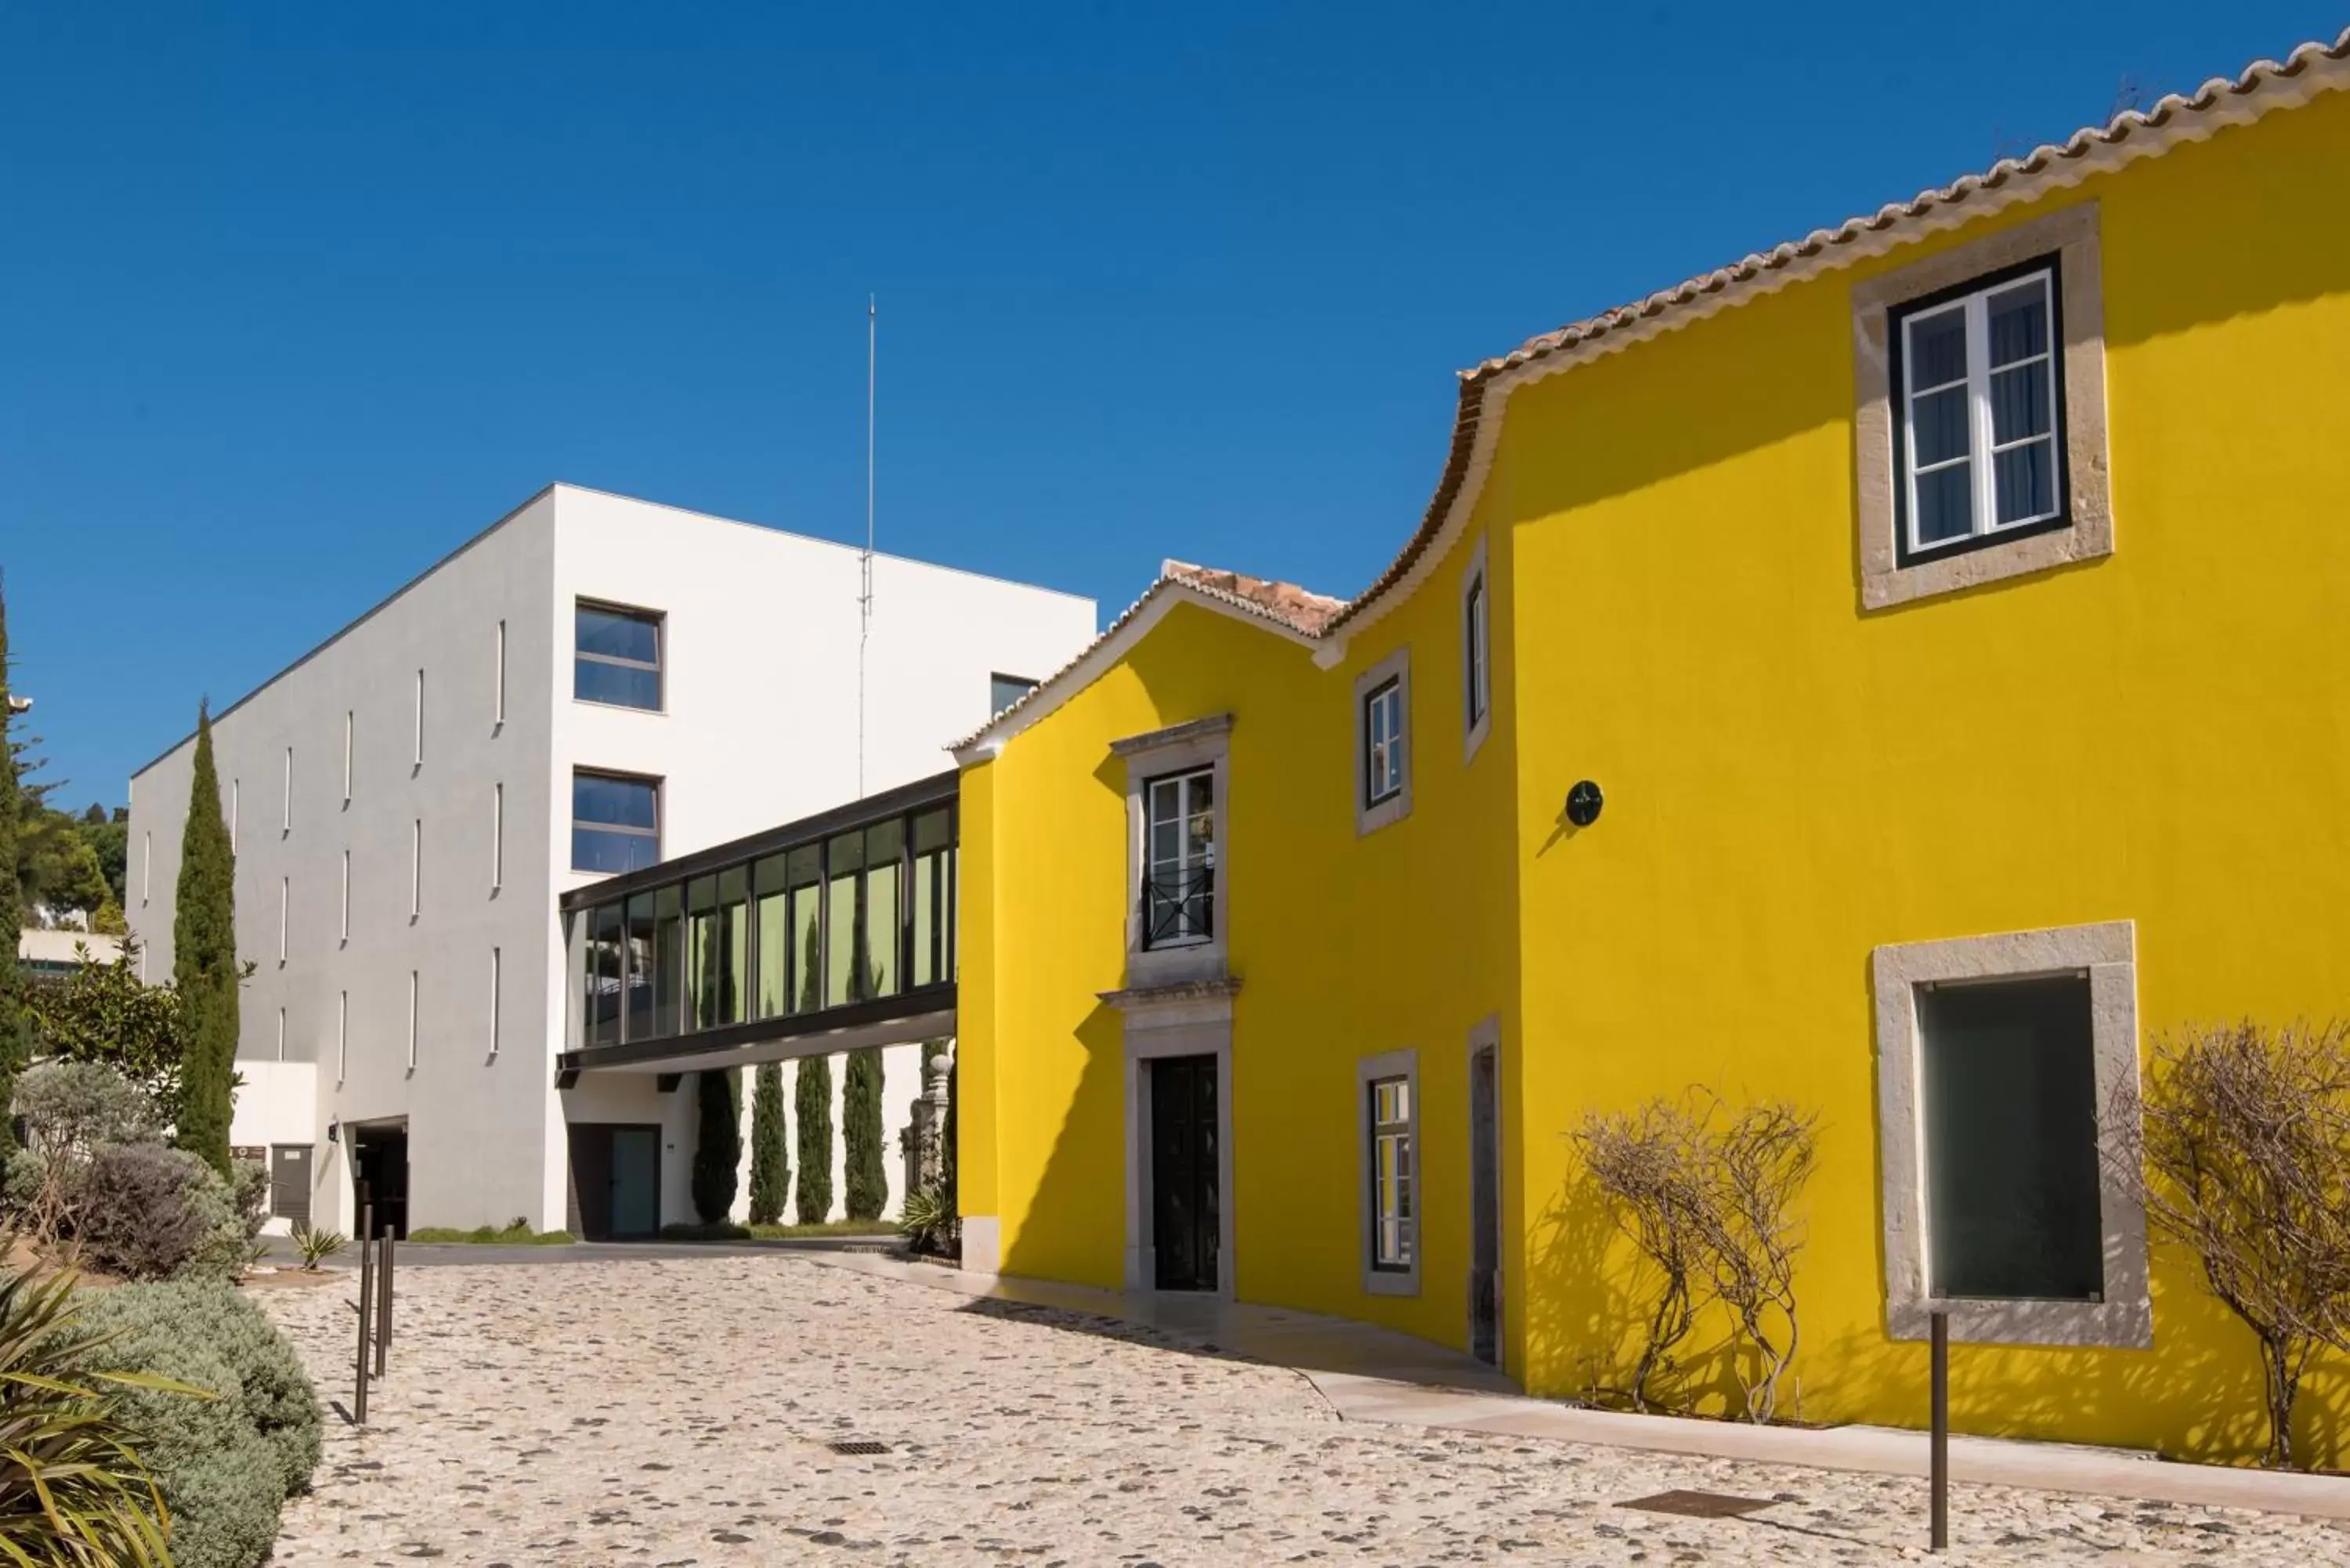 Property Building in Vila Gale Collection Palácio dos Arcos